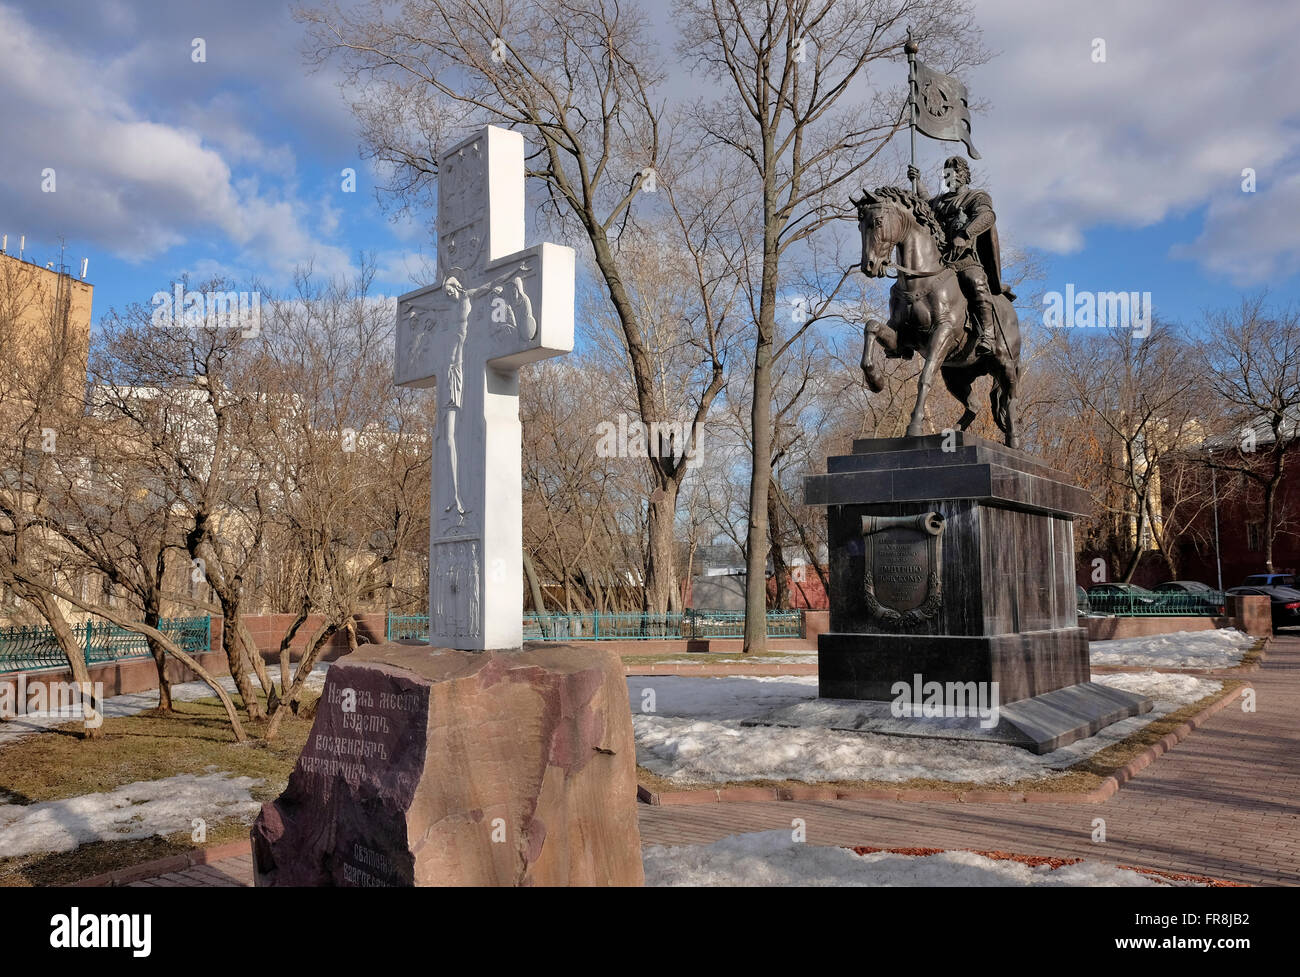 Mosca, Monumento al Santo Principe Dimitry Donskoy liberatore della terra russa, punto di riferimento Foto Stock